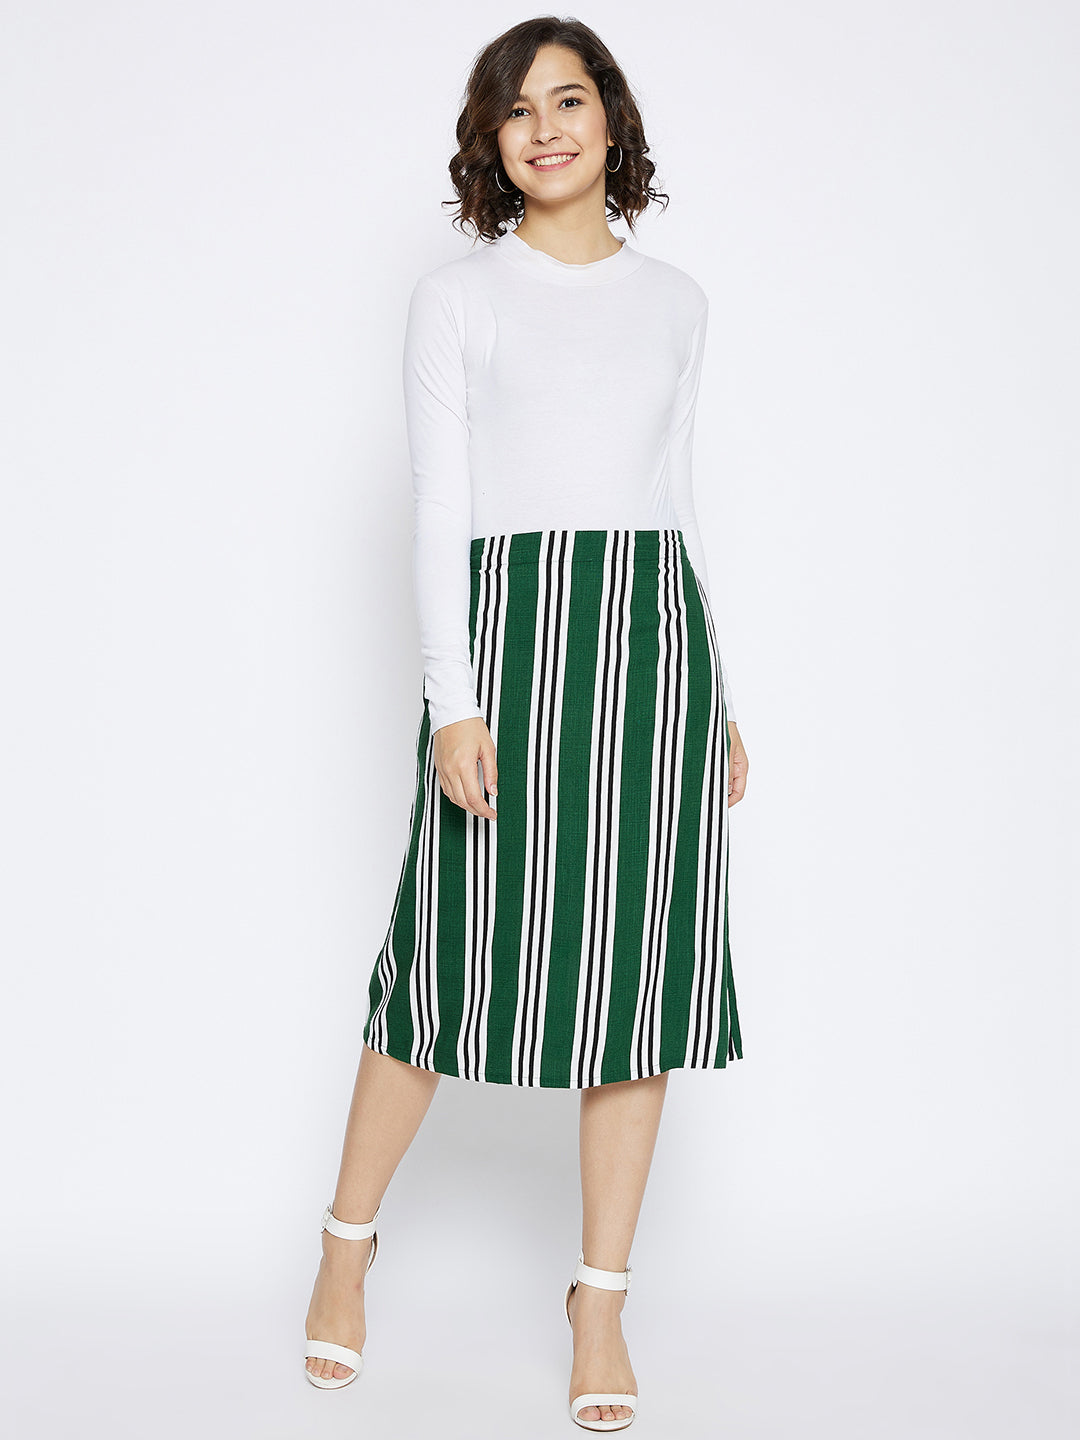 Green Striped Comfort Fit Skirt - Women Skirts